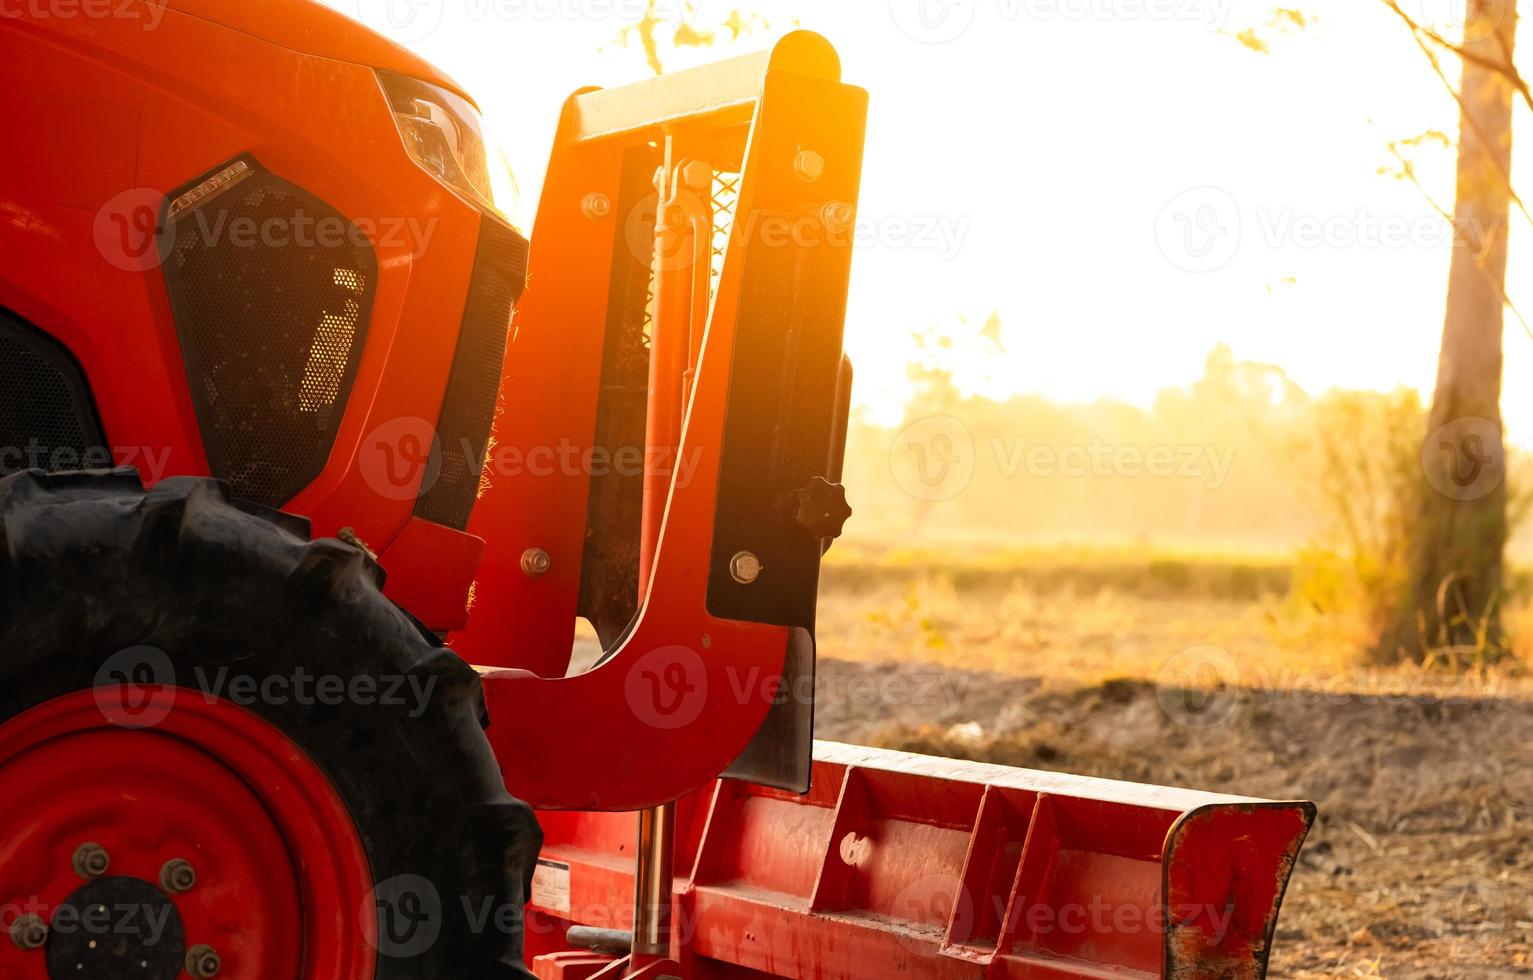 tractor naranja estacionado en una granja de arroz en la mañana de verano con luz solar. maquinaria agrícola en granja agrícola. concepto de agricultura inteligente. vehículo en finca. Maquinaria que ahorra mano de obra. equipo para plantación foto